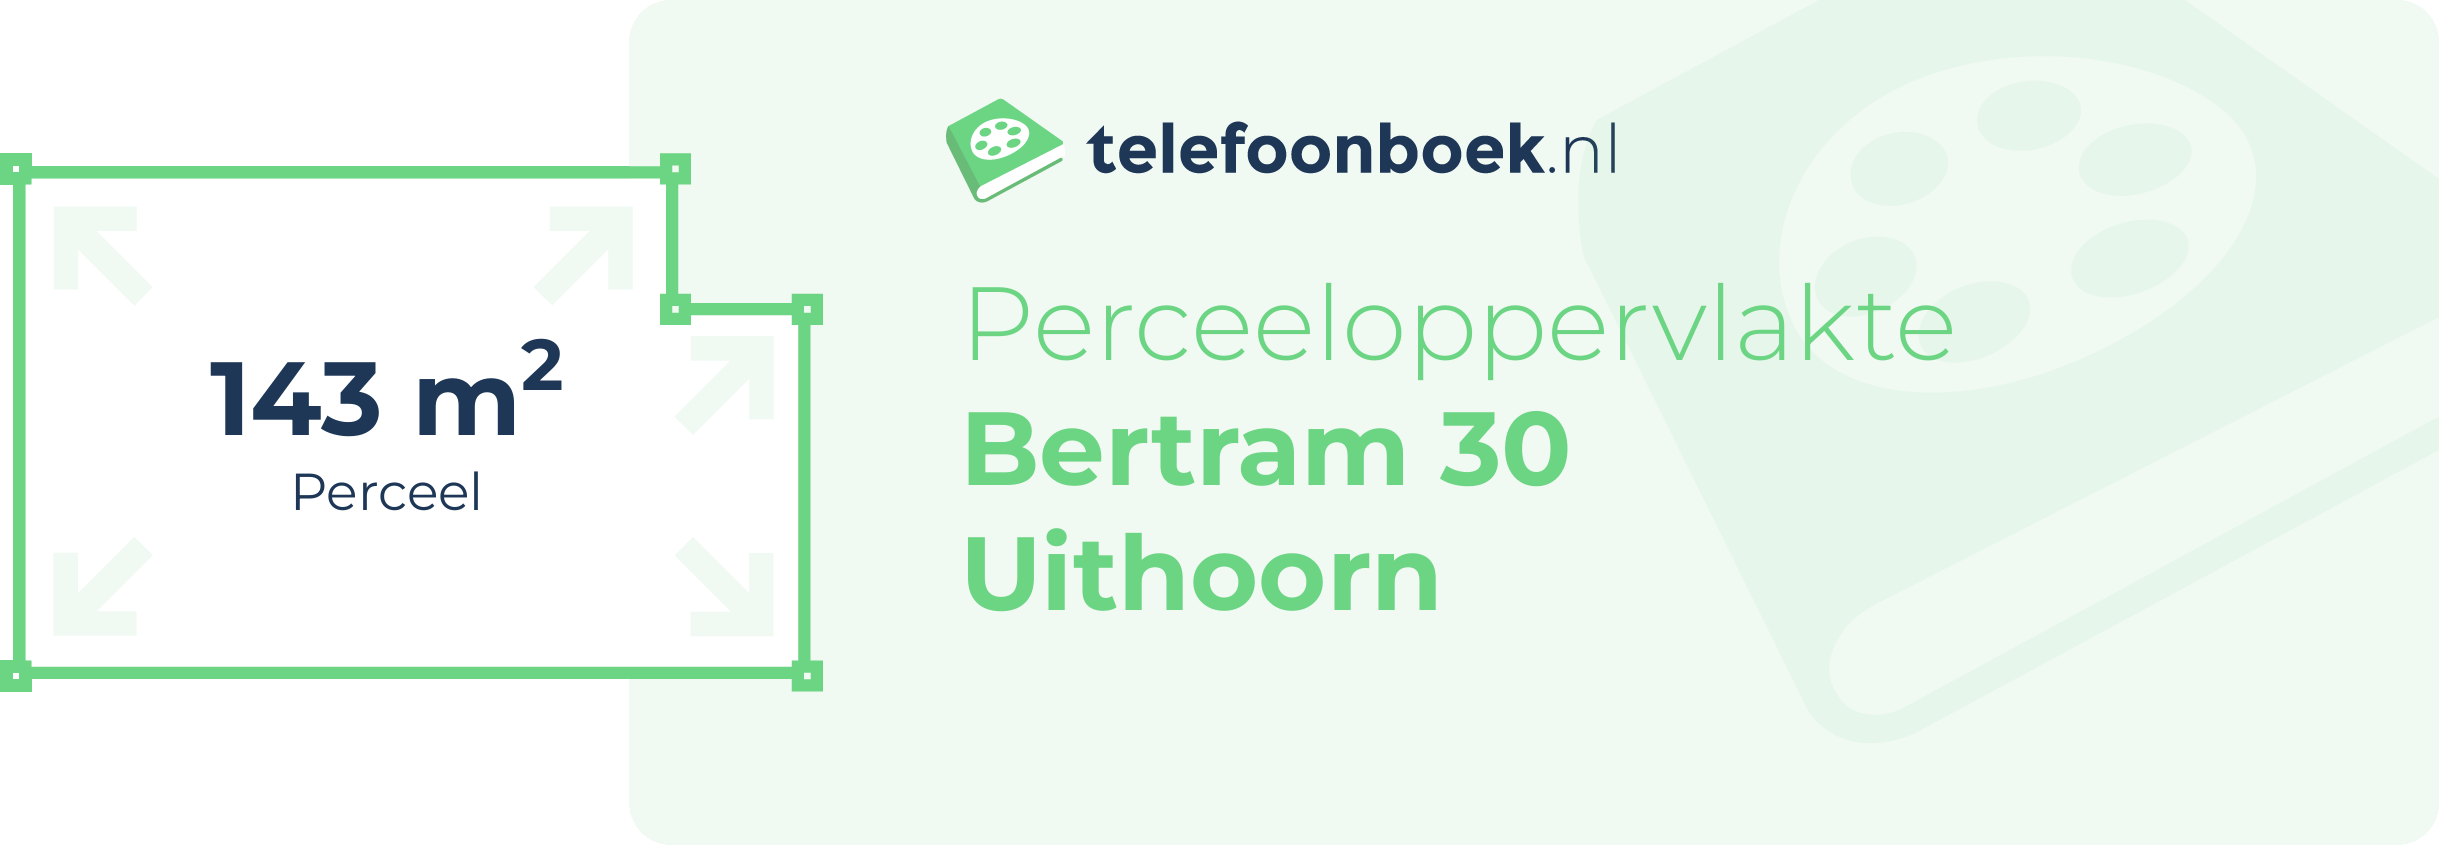 Perceeloppervlakte Bertram 30 Uithoorn